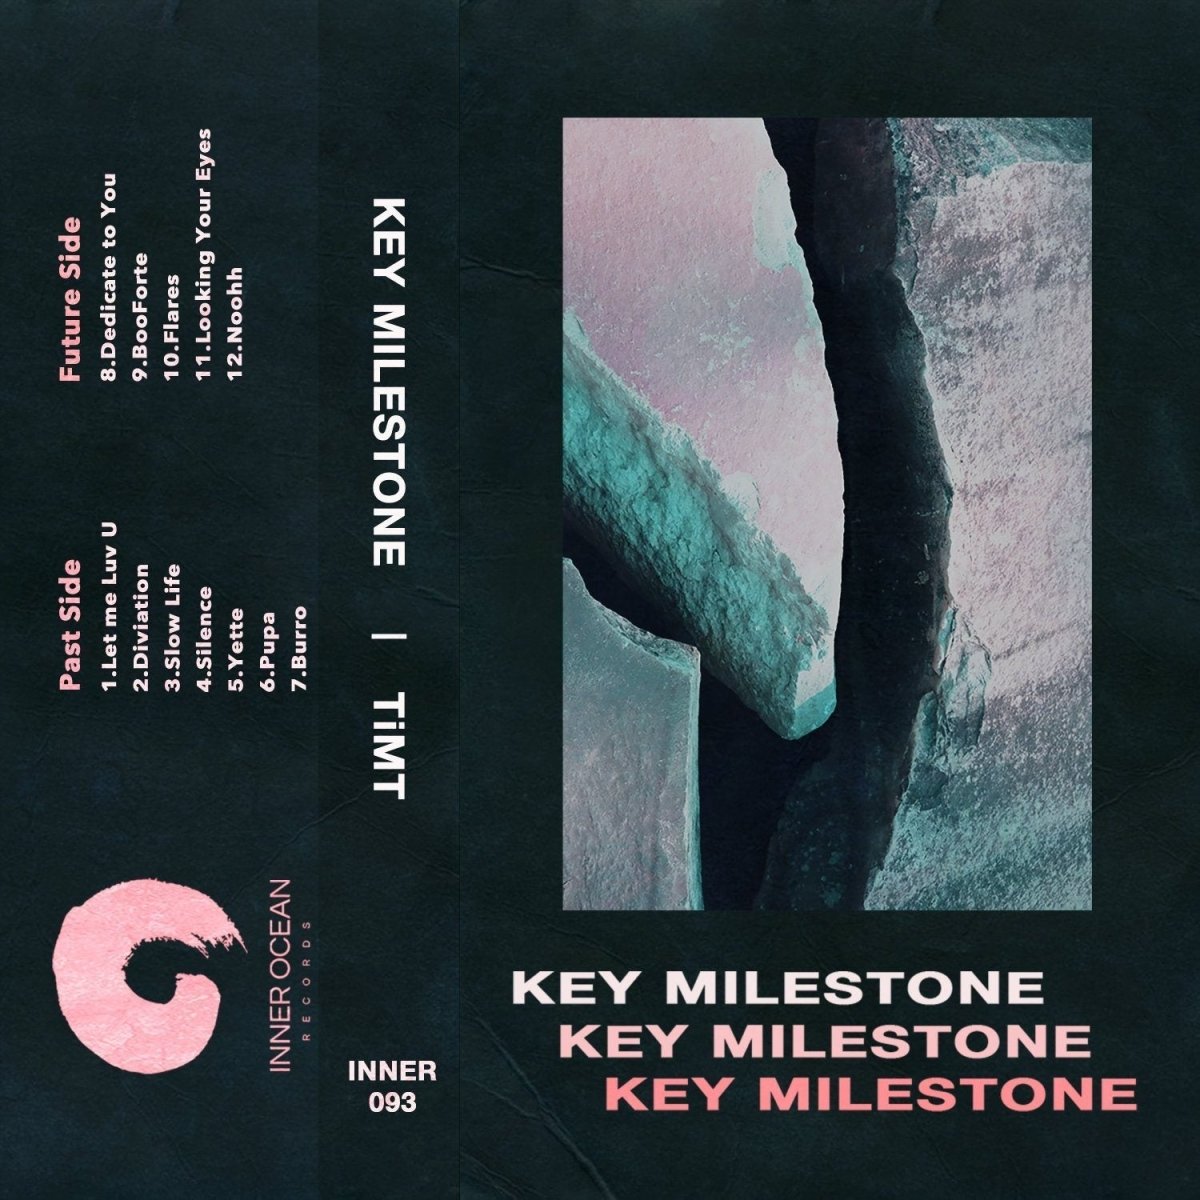 TiMT - Key Milestone - Inner Ocean Records